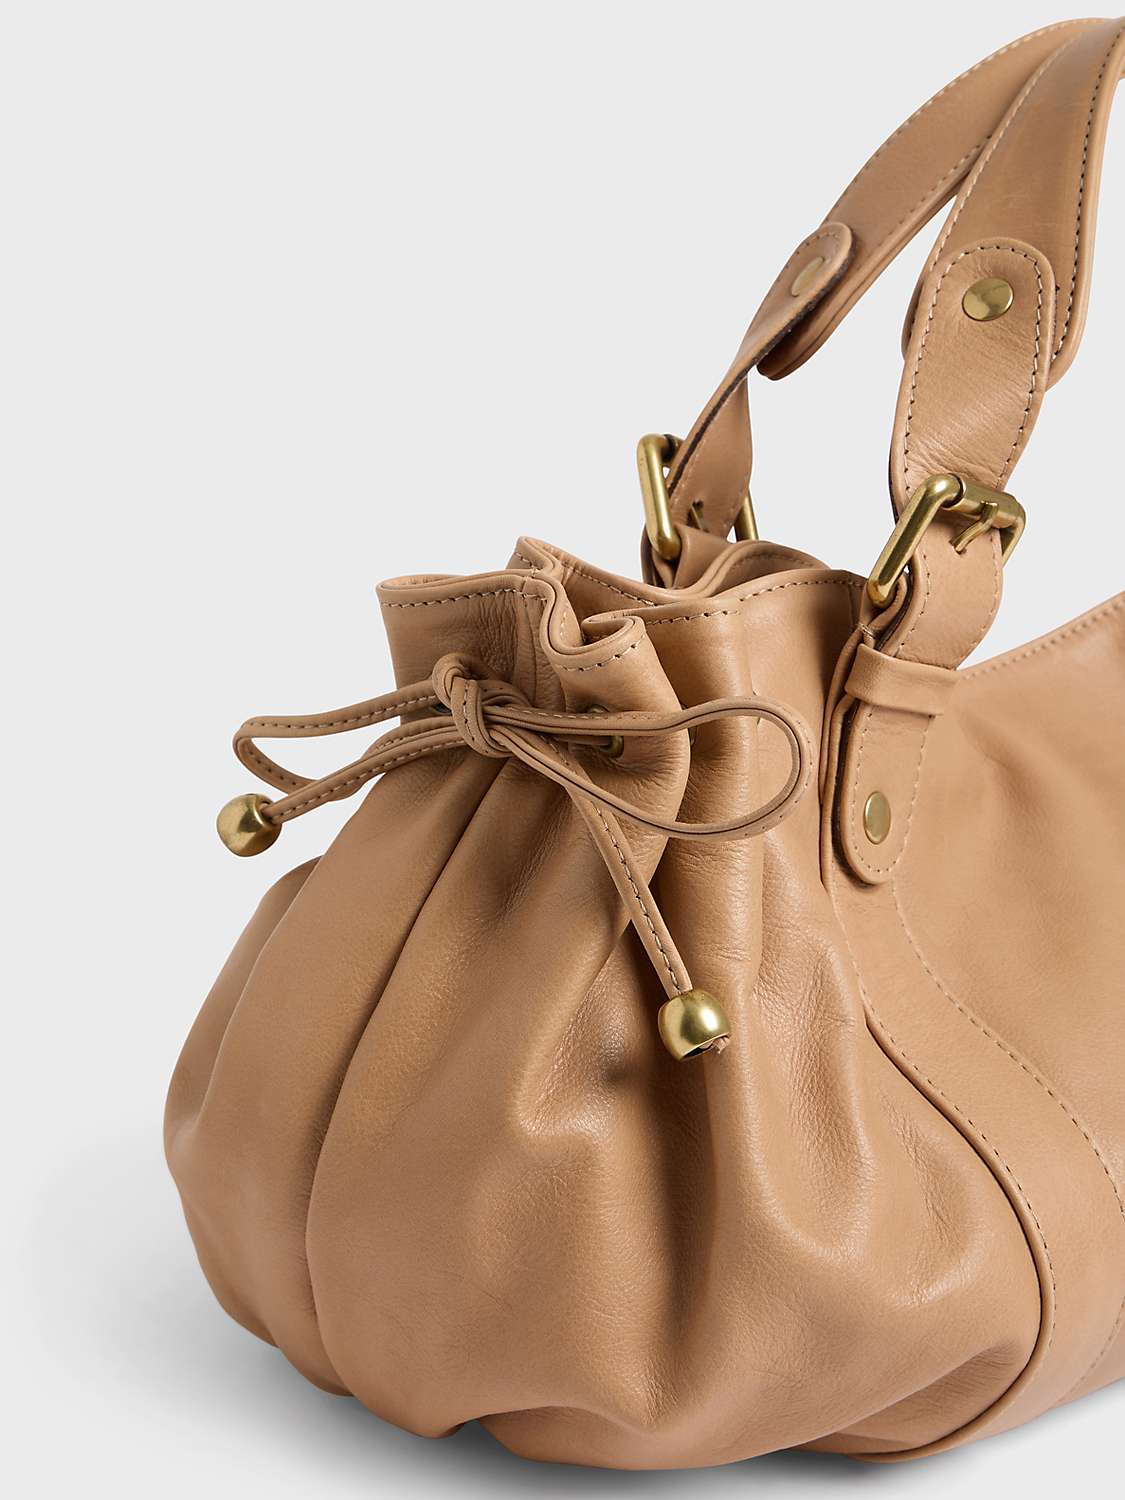 Buy Gerard Darel 24H Leather Shoulder Bag Online at johnlewis.com